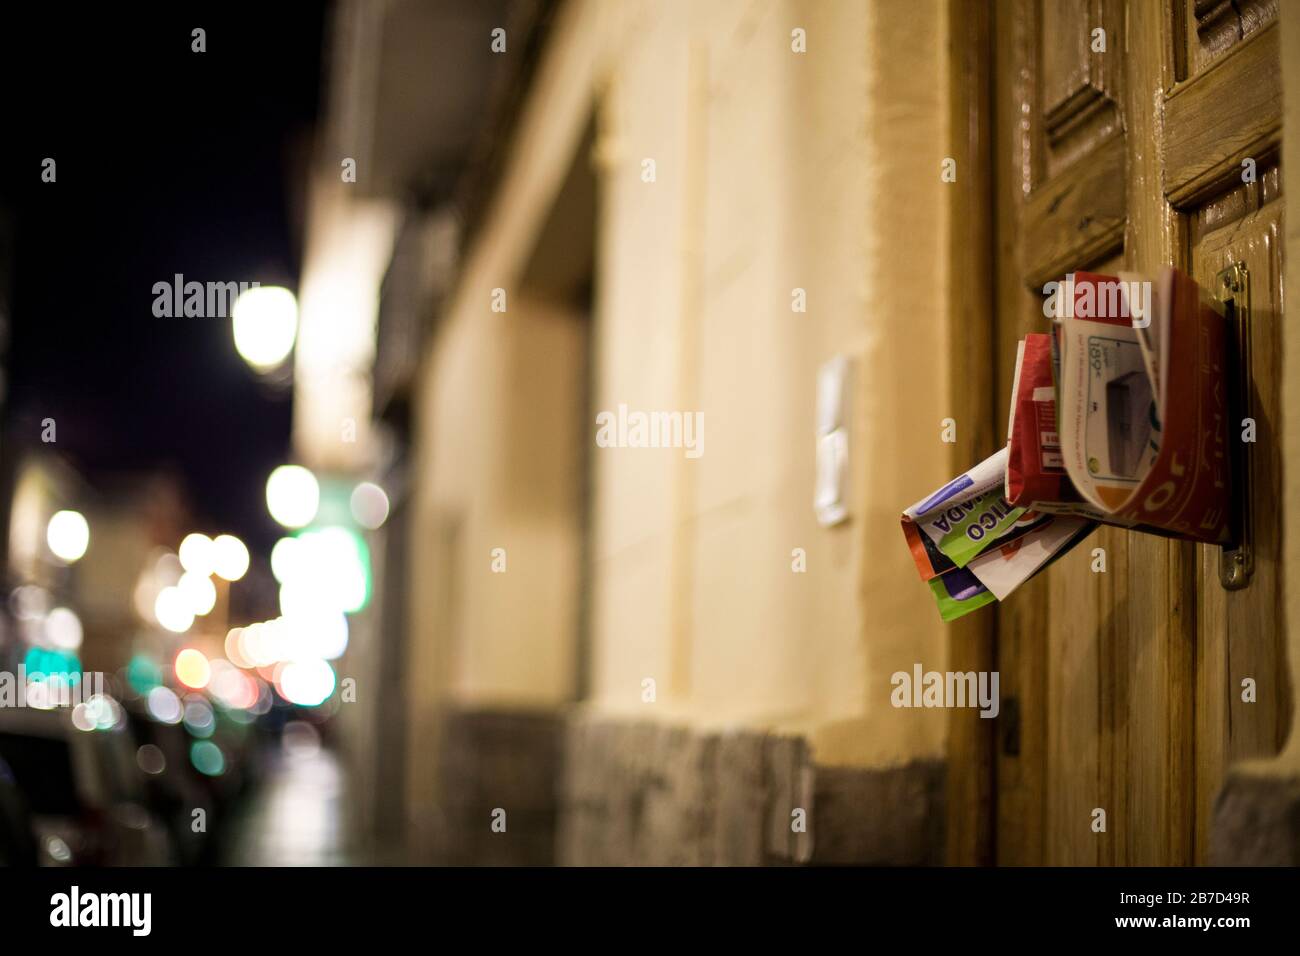 Werbung im Nachtpostfach nachts in der Stadt mit Weichzeichnerlicht Stockfoto